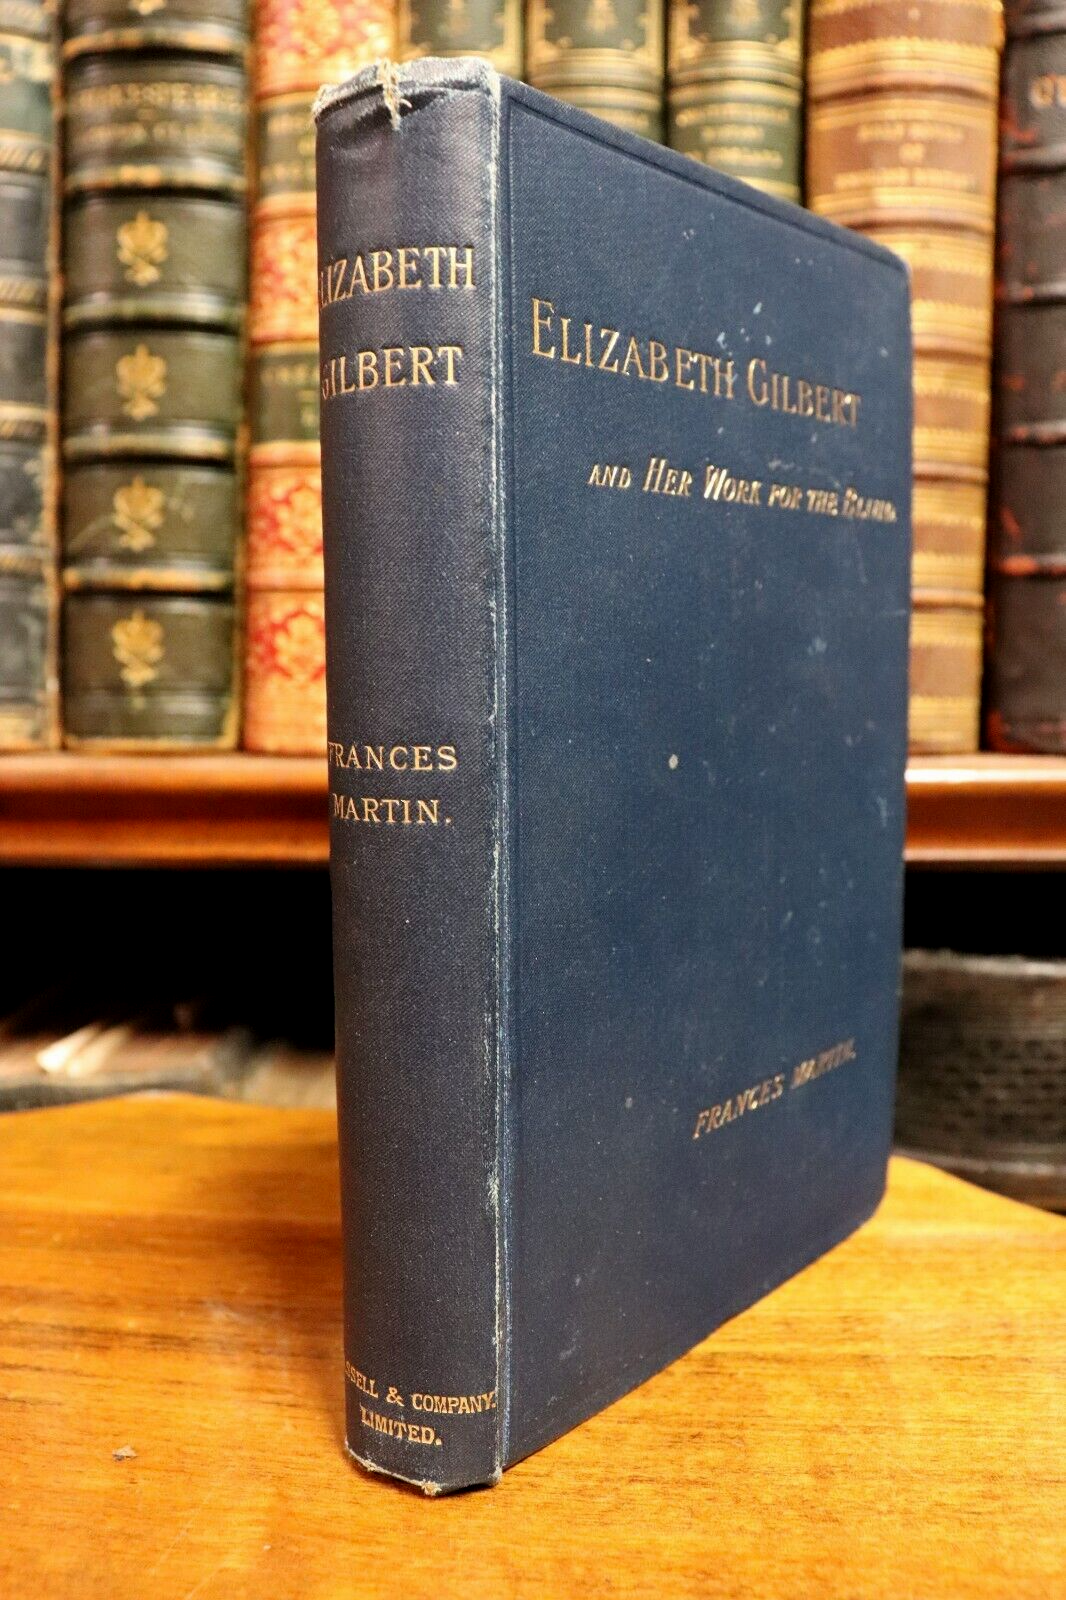 Elizabeth Gilbert & Her Work For The Blind - 1891 - Antique Medical History Book